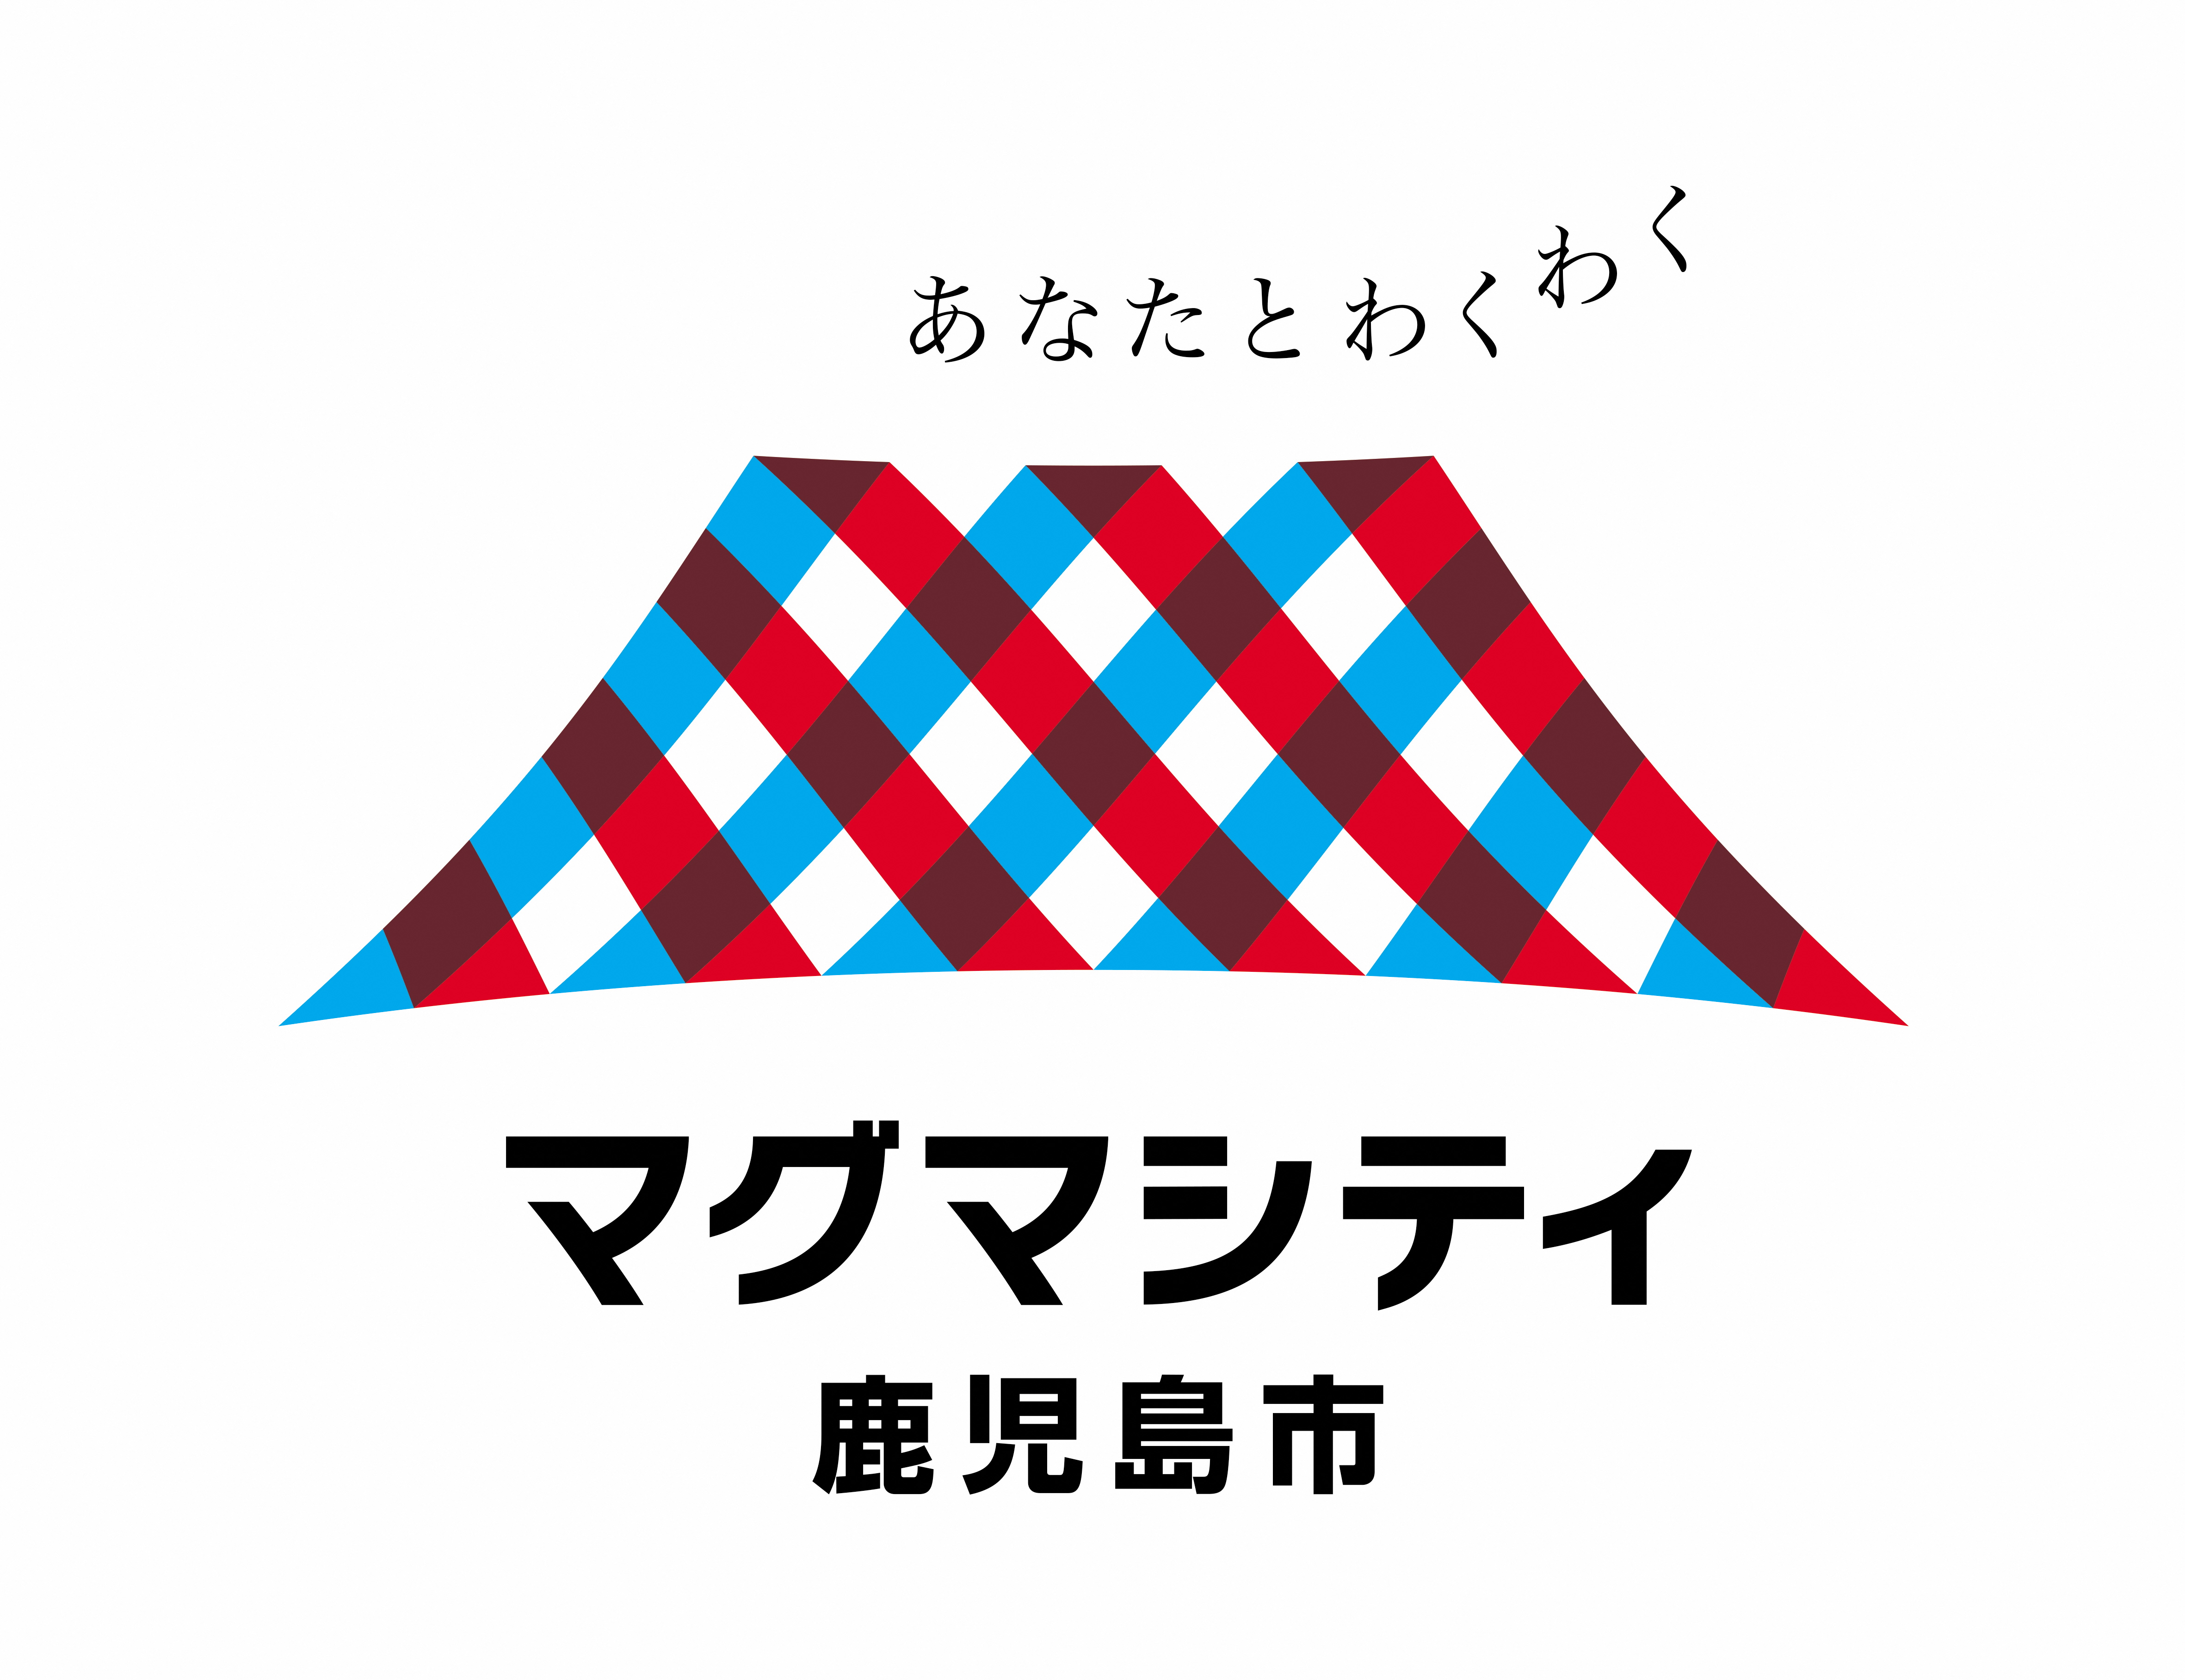 鹿児島市 あなたとワクワク マグマシティ が1位に イメージ ロゴマークランキング 西日本編 株式会社ウェイブダッシュのプレスリリース